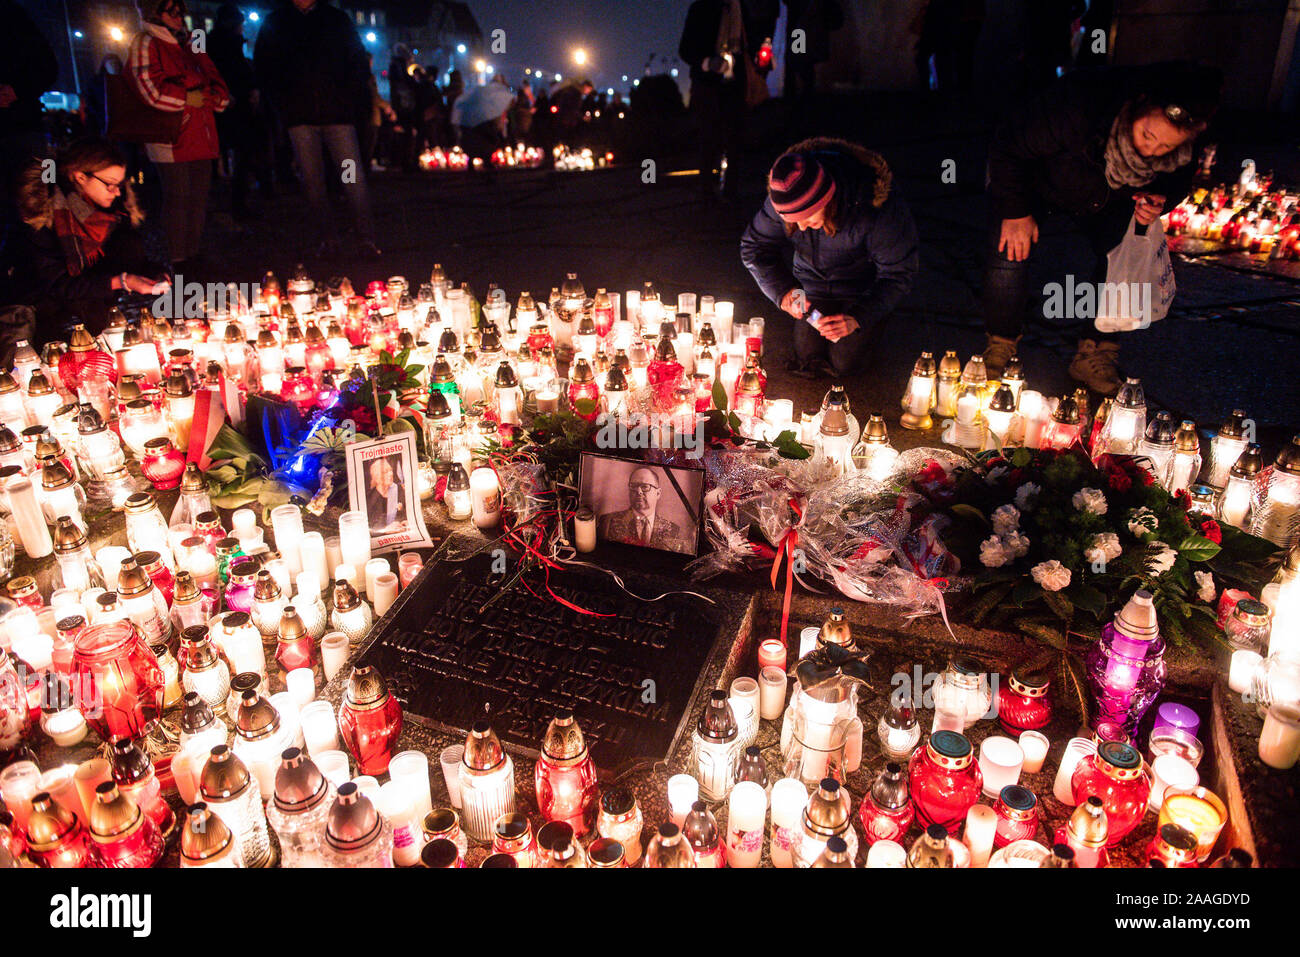 Un grande cuore forma resa dalle candele come un omaggio al tragicamente ucciso il sindaco di Danzica Pawel Adamowicz presso la Piazza della solidarietà in Gdansk.Sindaco di Danzica, Pawel Adamowicz è stata accoltellata sul palco durante la partecipazione a un evento di beneficenza a Danzica il 13 gennaio e morì un giorno più tardi delle sue ferite. Foto Stock